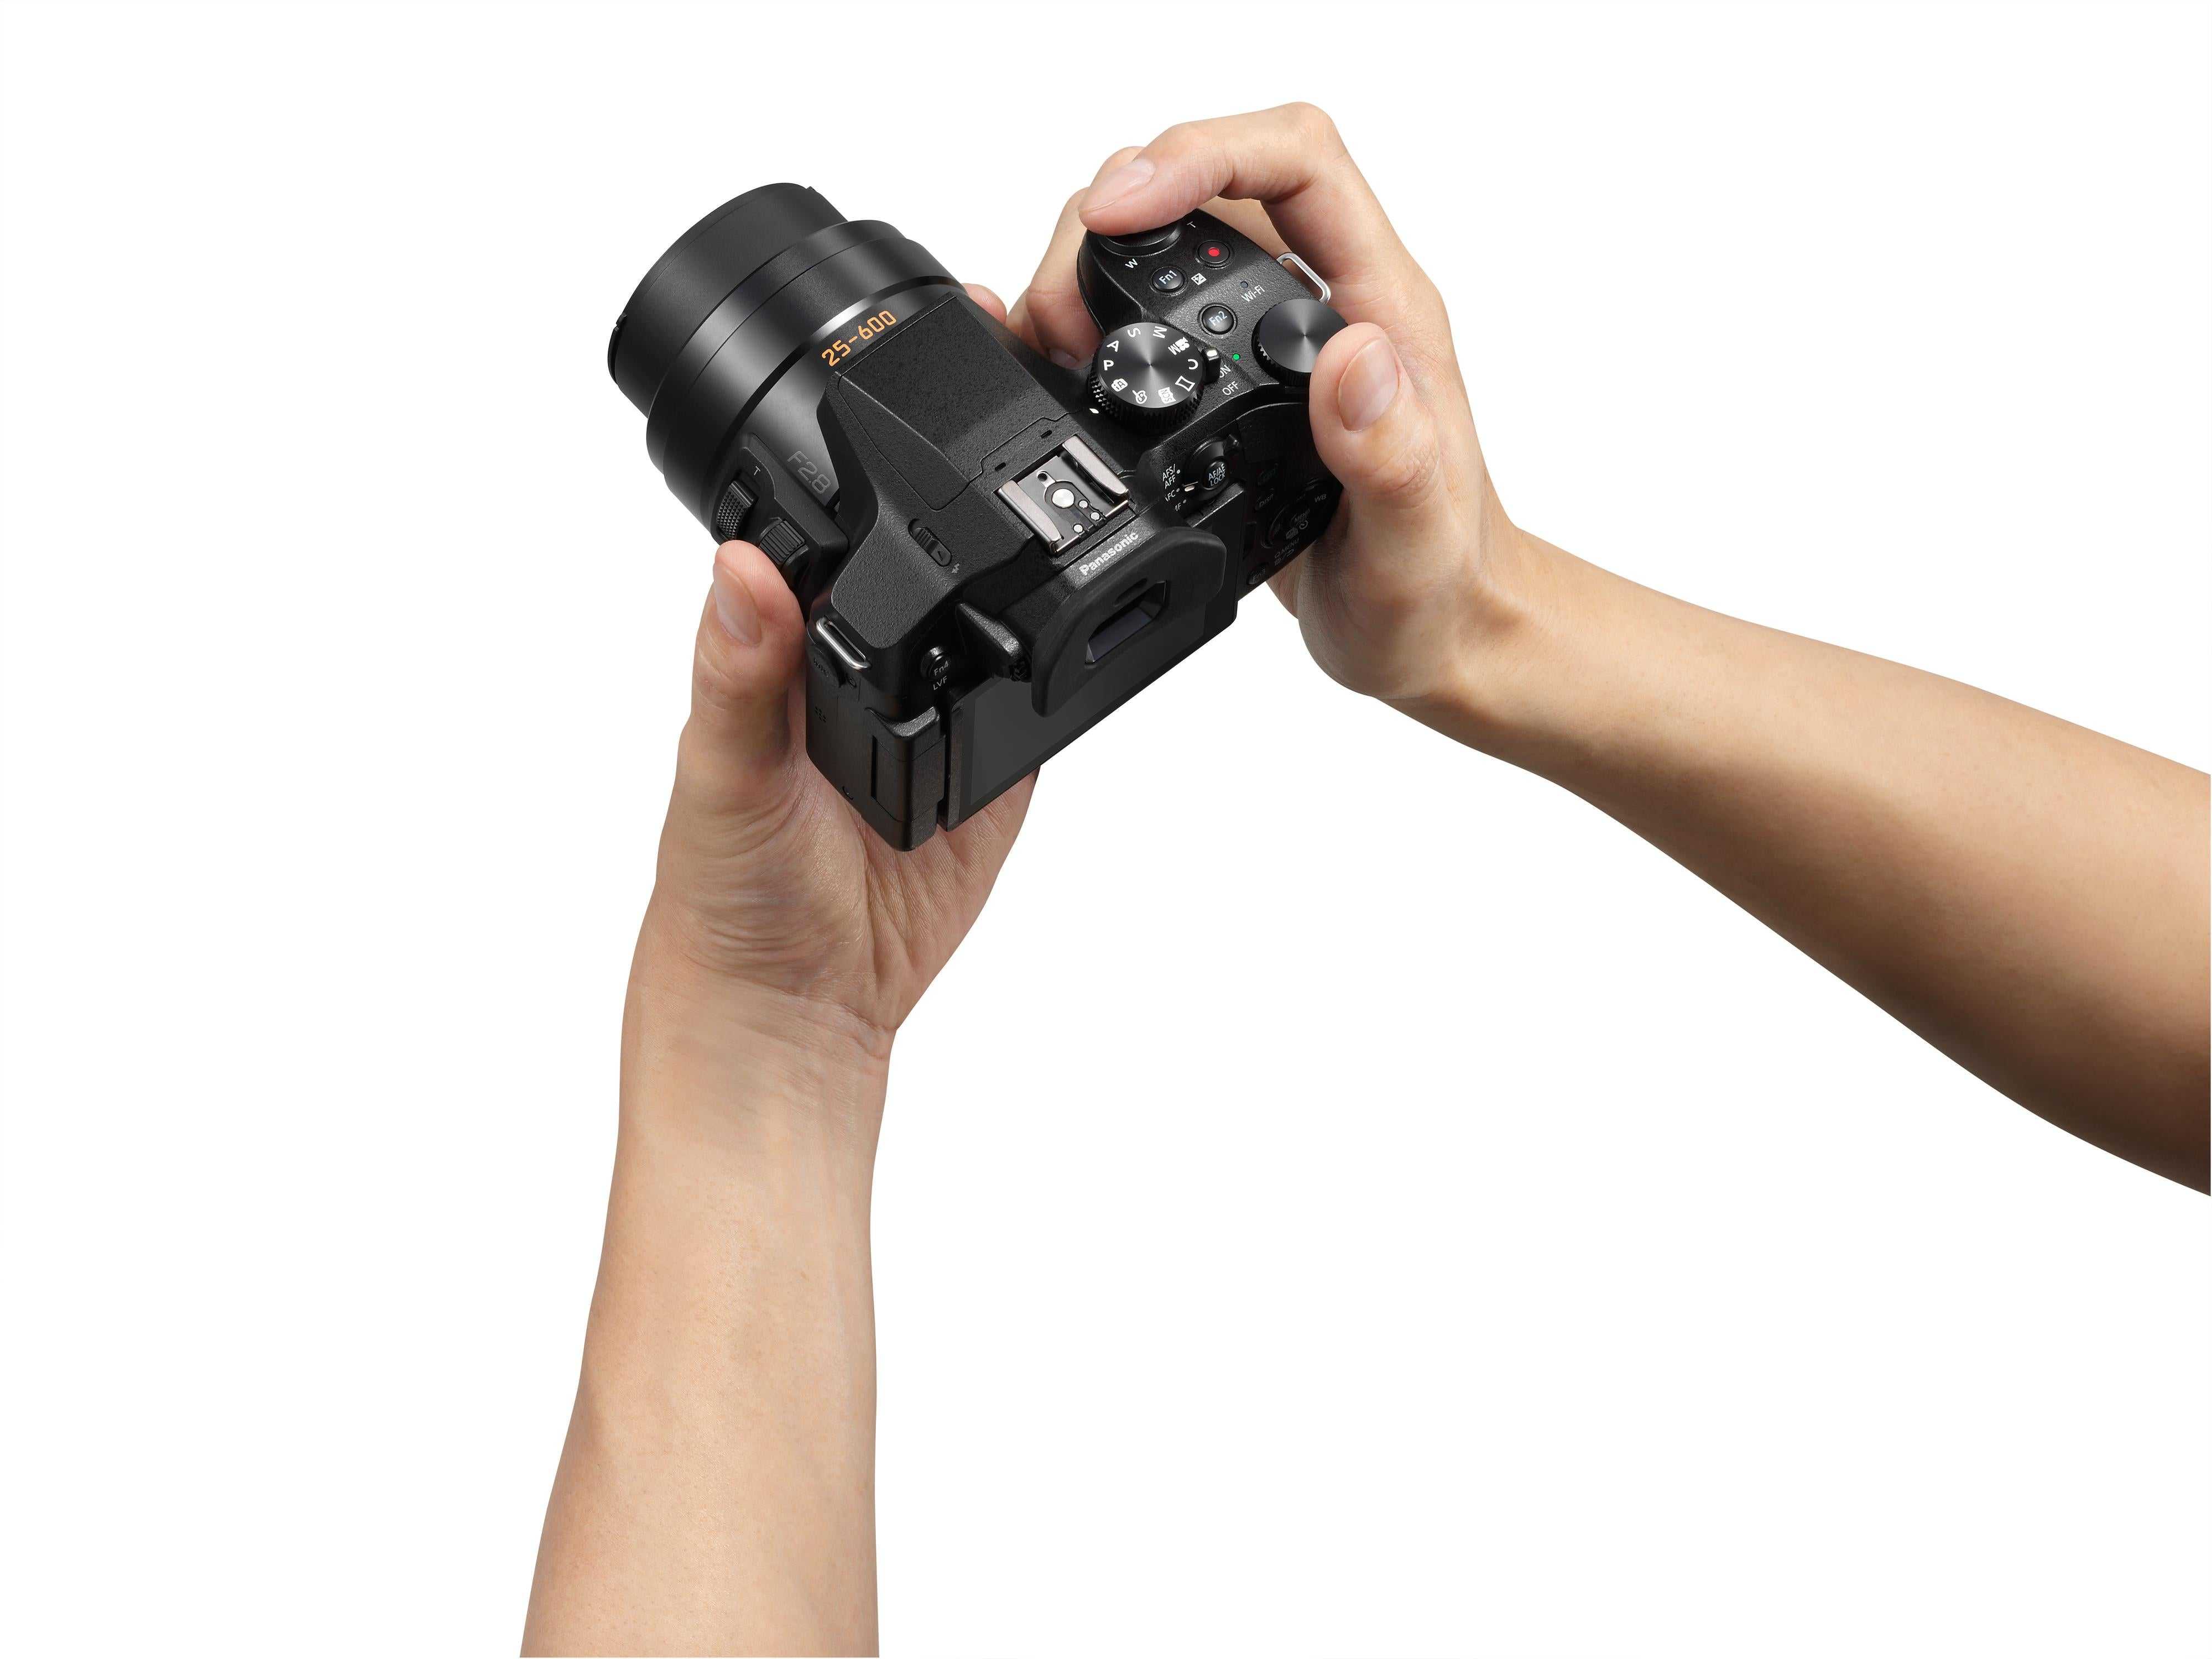 Тест panasonic lumix dmc-fz1000: камеру можно легко держать на вытянутой руке с объективом 400 мм / f4.0 без «длинного конца»…